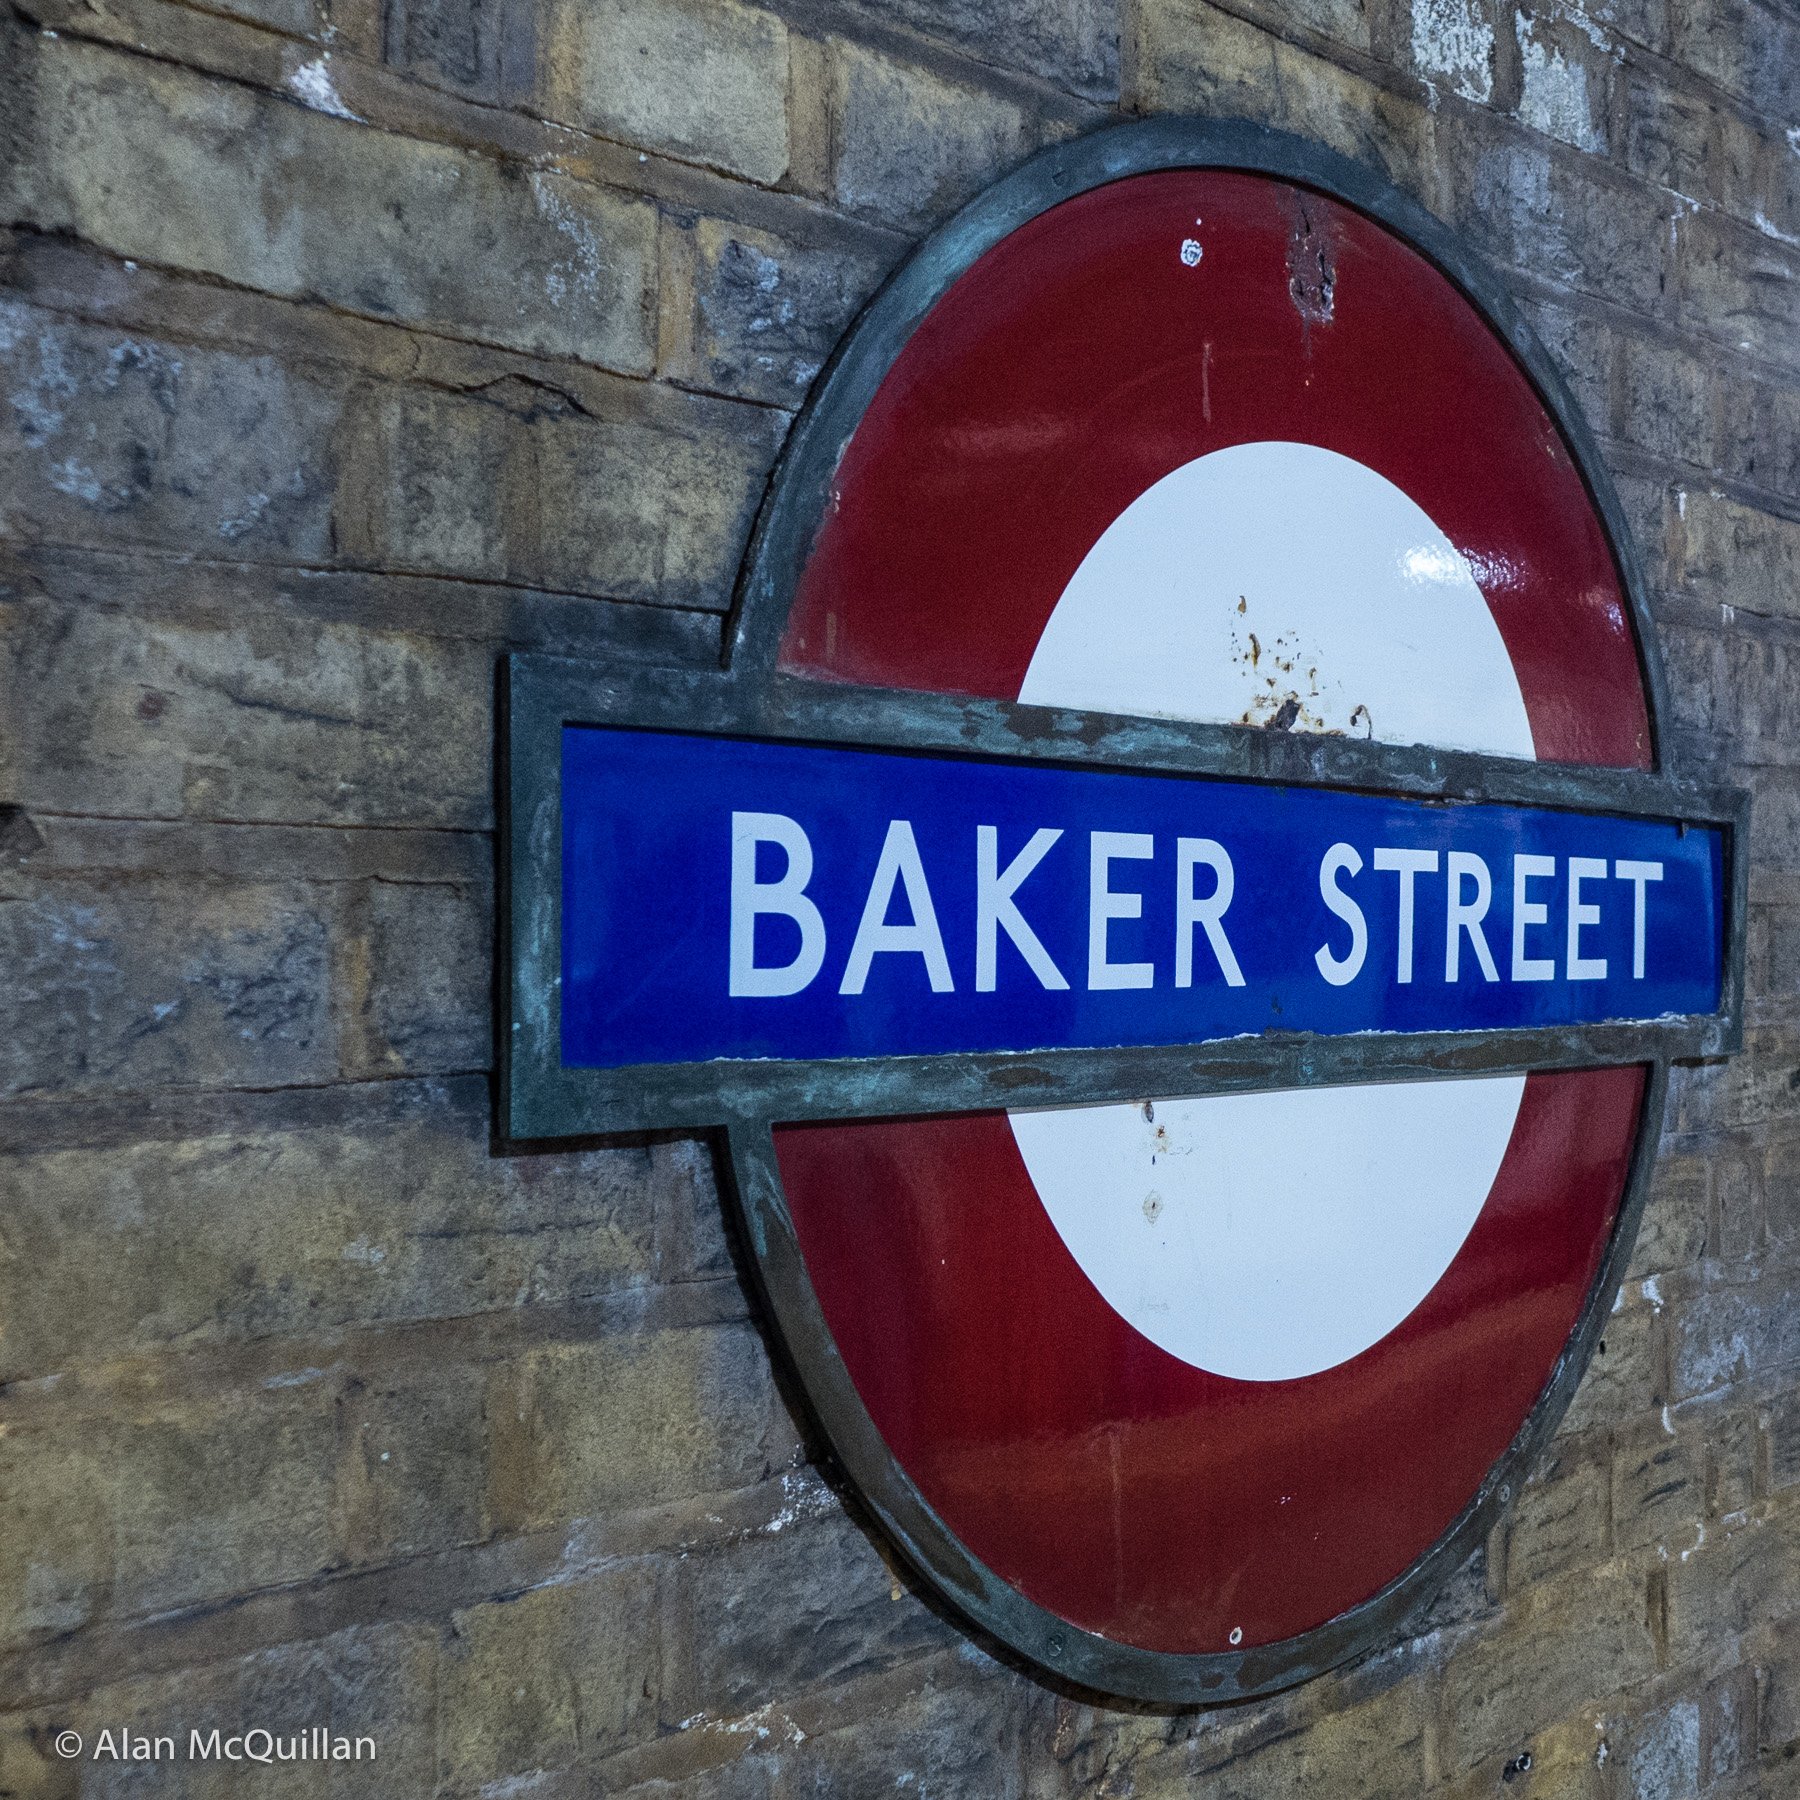 Baker Street Station, London, 2013 2